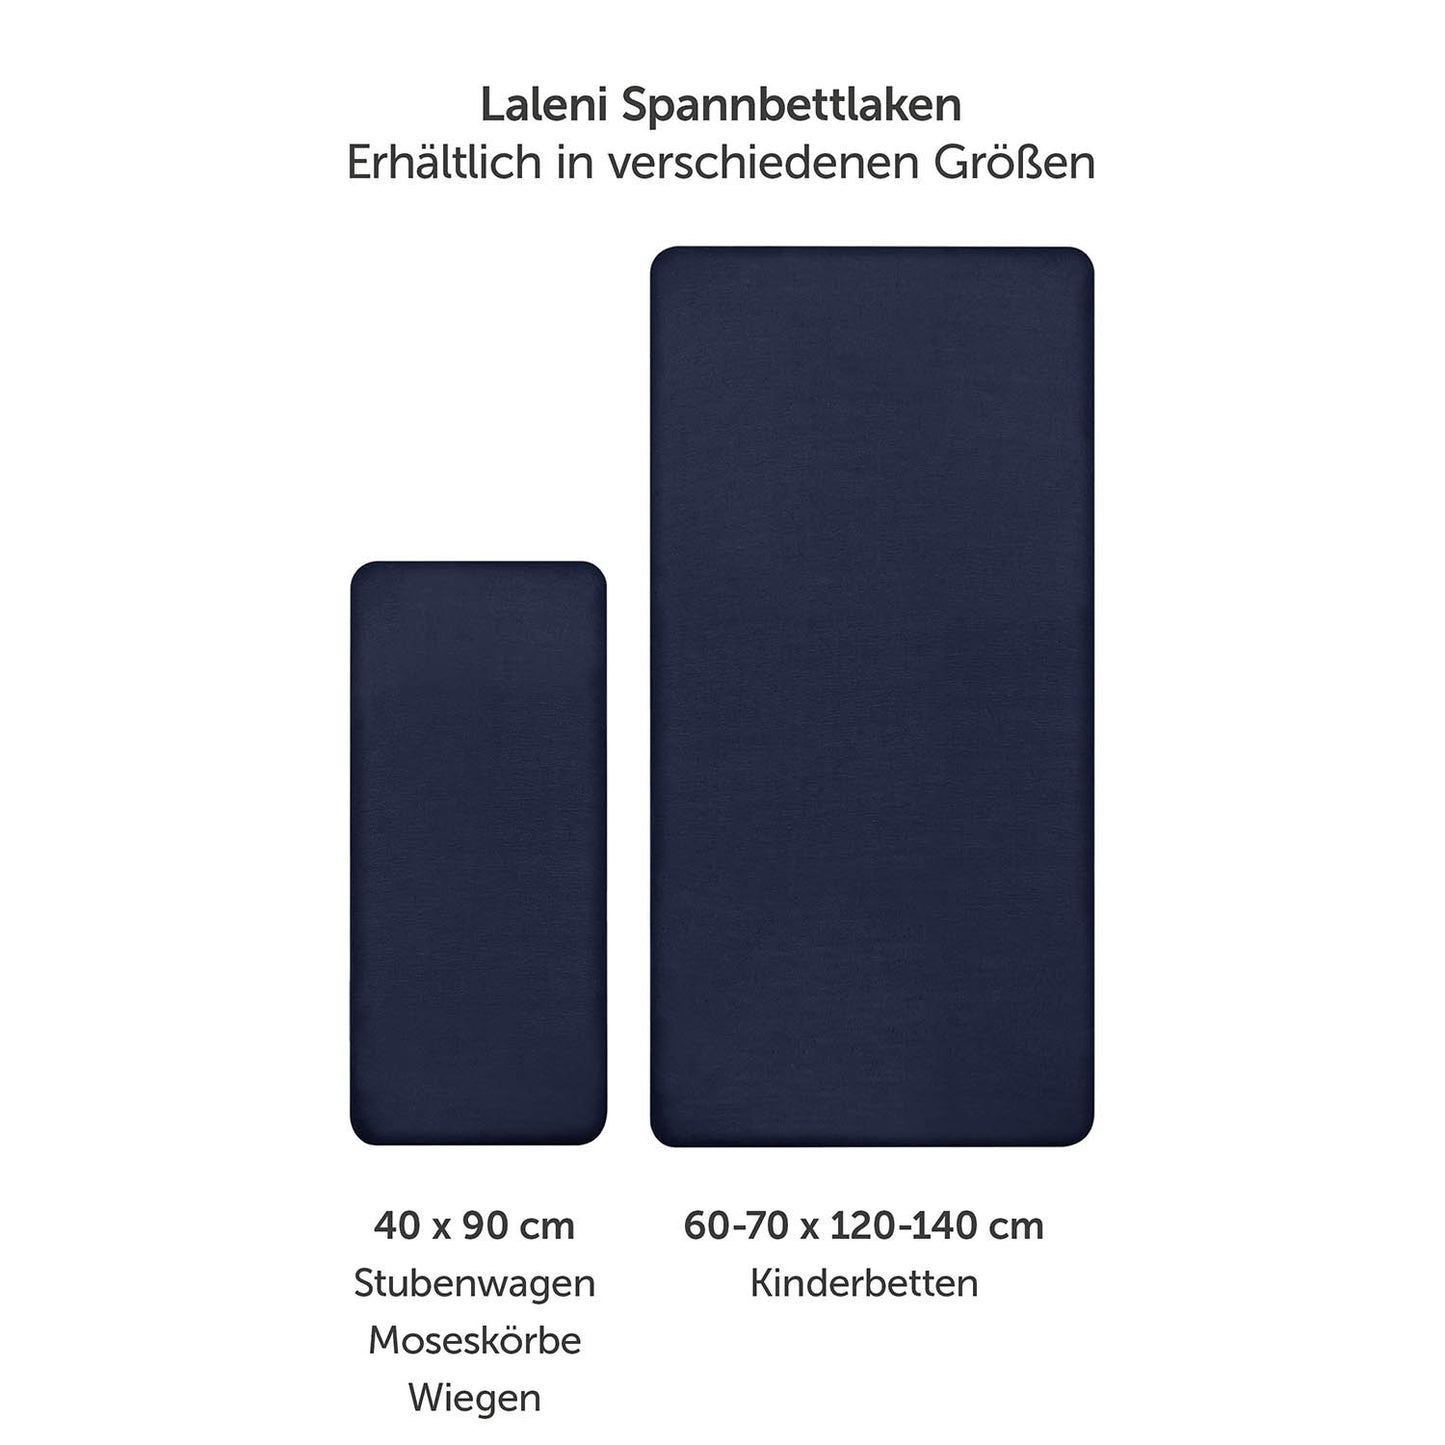 Produktverpackung für Premium Spannbetttücher in dunkelblau Farben mit Öko-Tex Standard 100 Siegel.